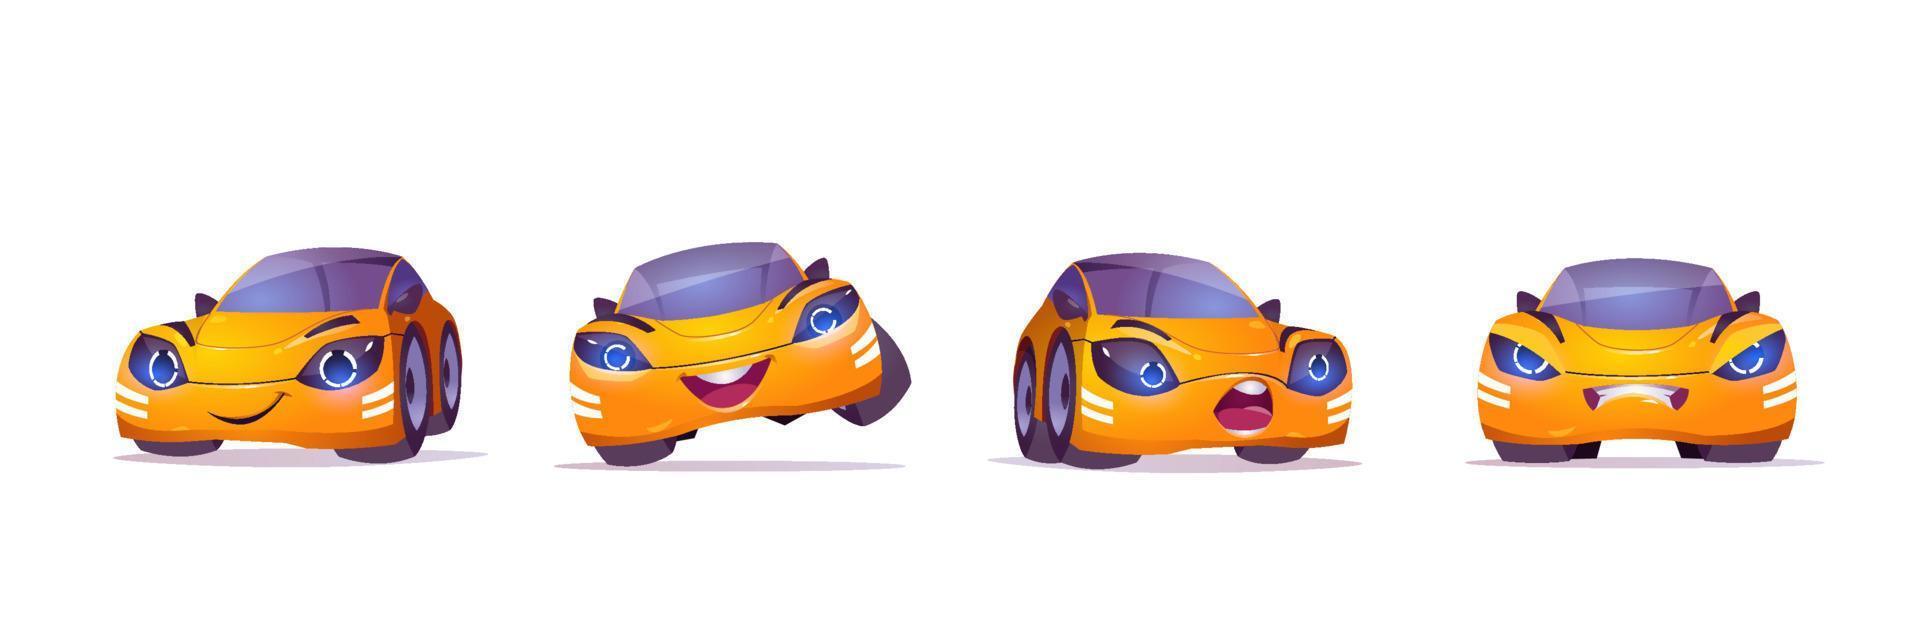 personagem de carro amarelo fofo em poses diferentes vetor